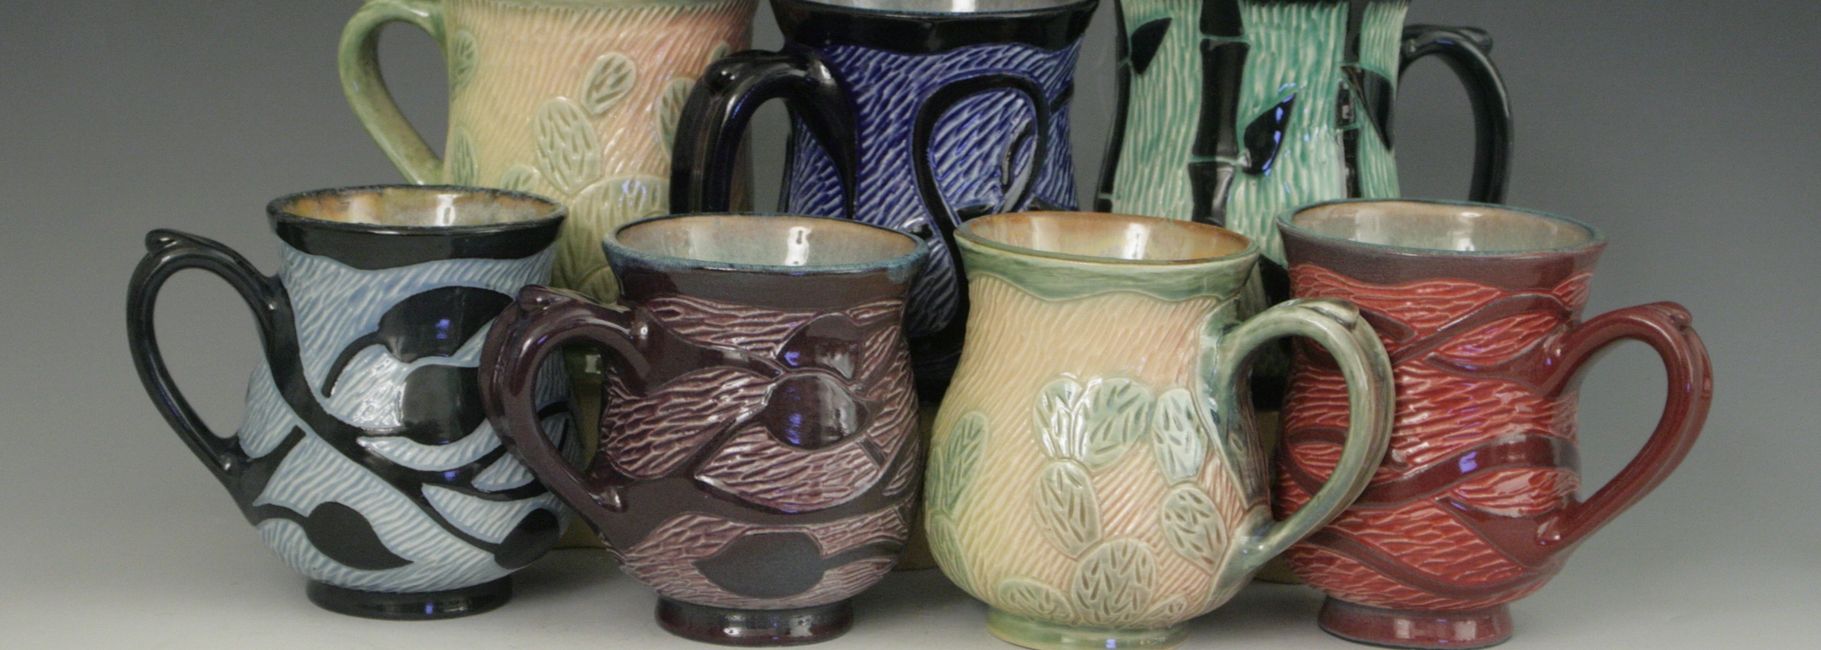 Sgraffito mugs by Lisa Harnish